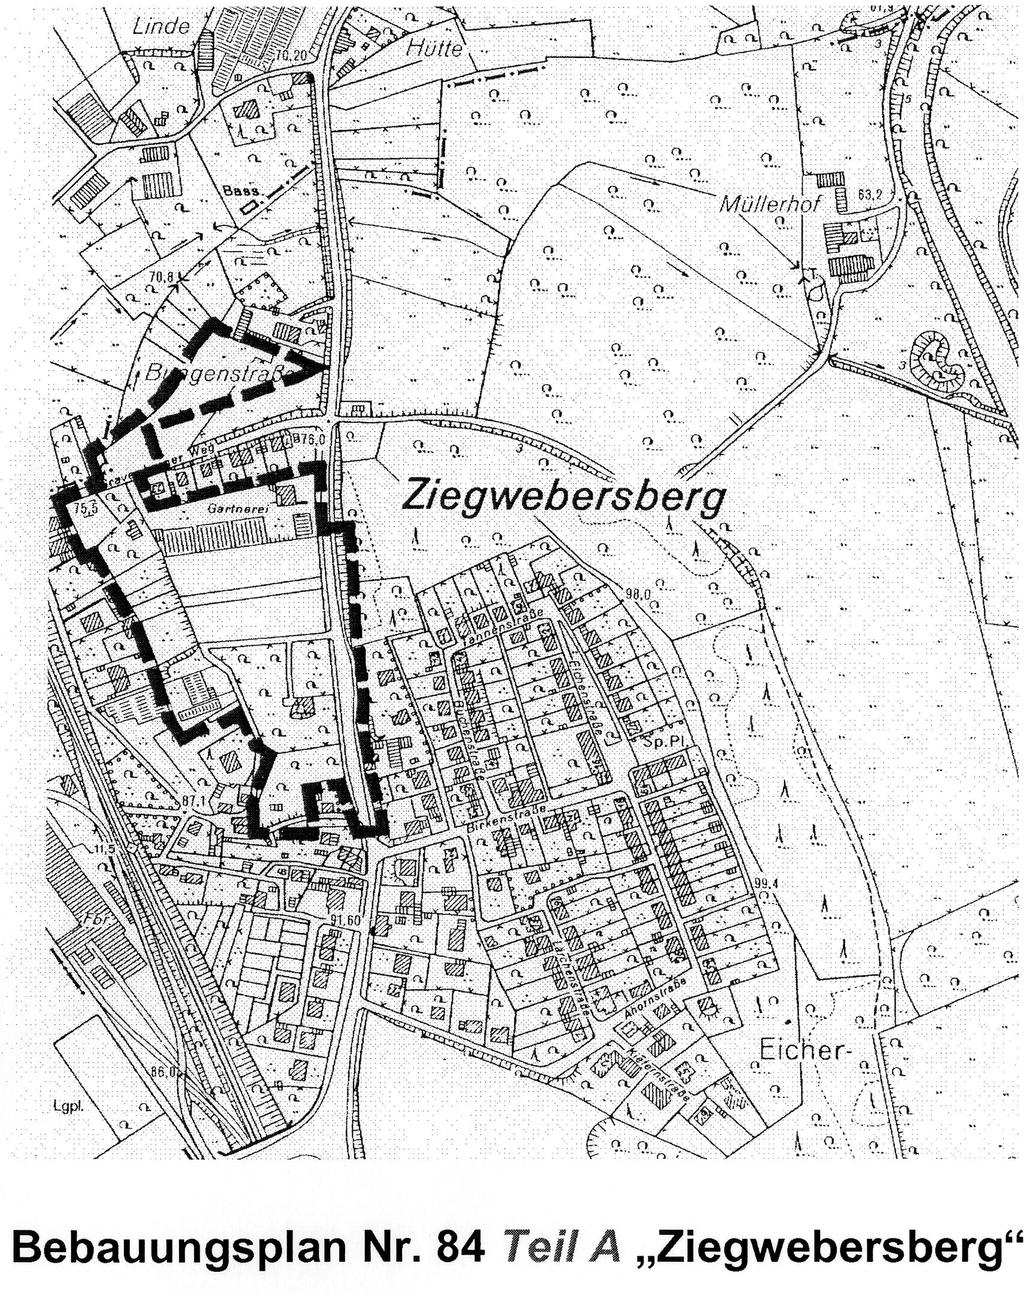 44 109 Öffentliche Bekanntmachung über die Satzung der Stadt Leichlingen vom 24.05.2007 zum Bebauungsplan Nr.